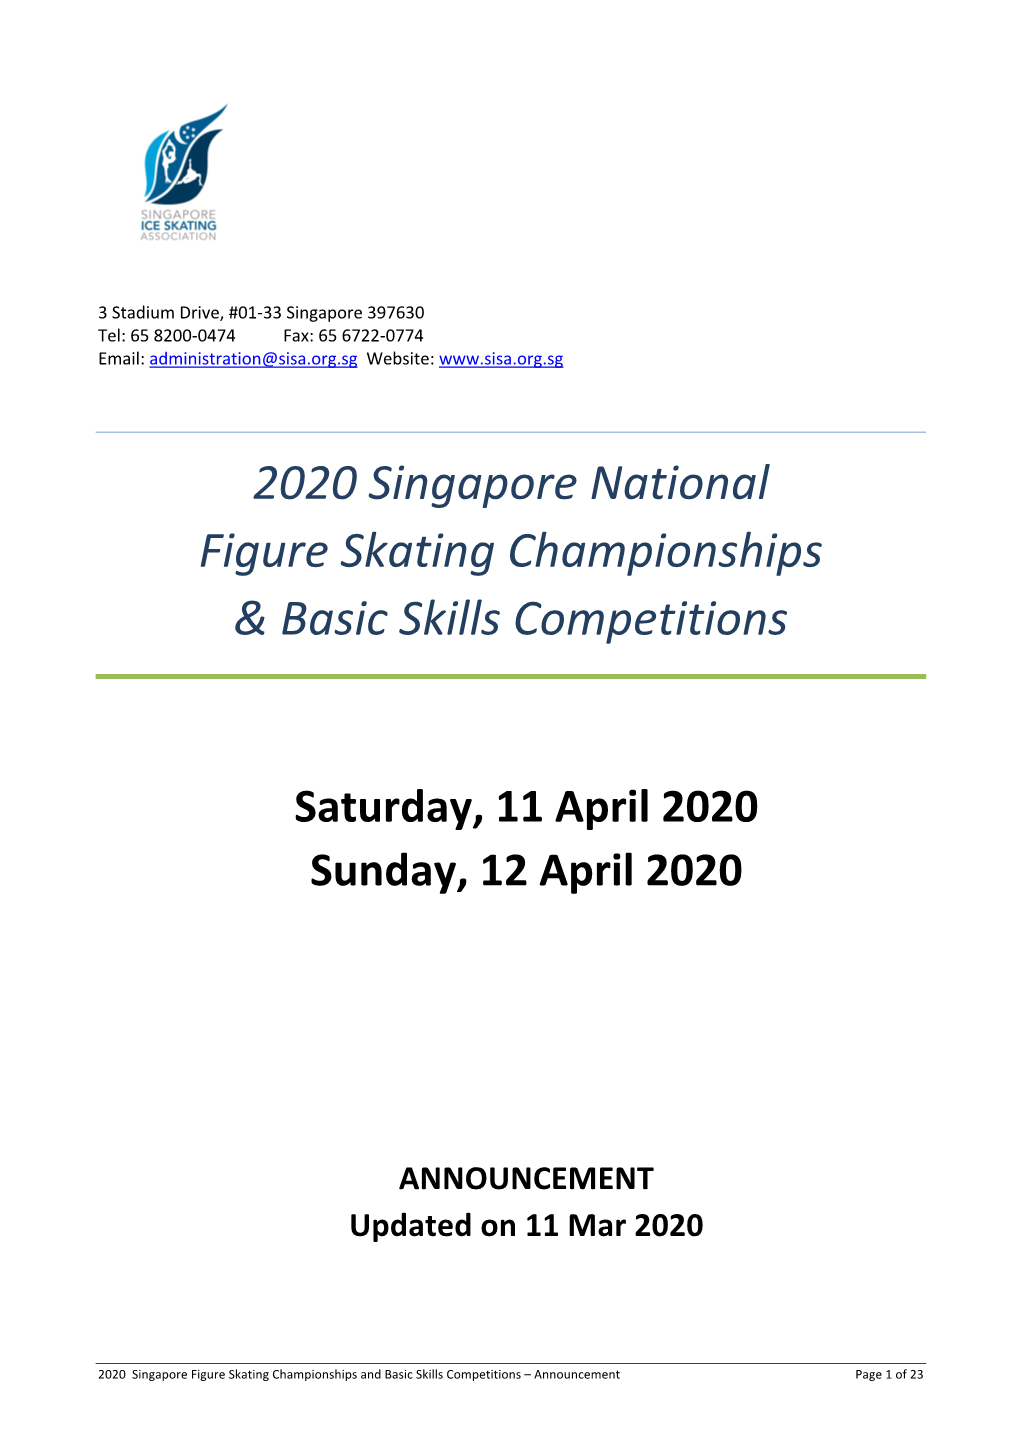 2020 Singapore National Figure Skating Championships & Basic